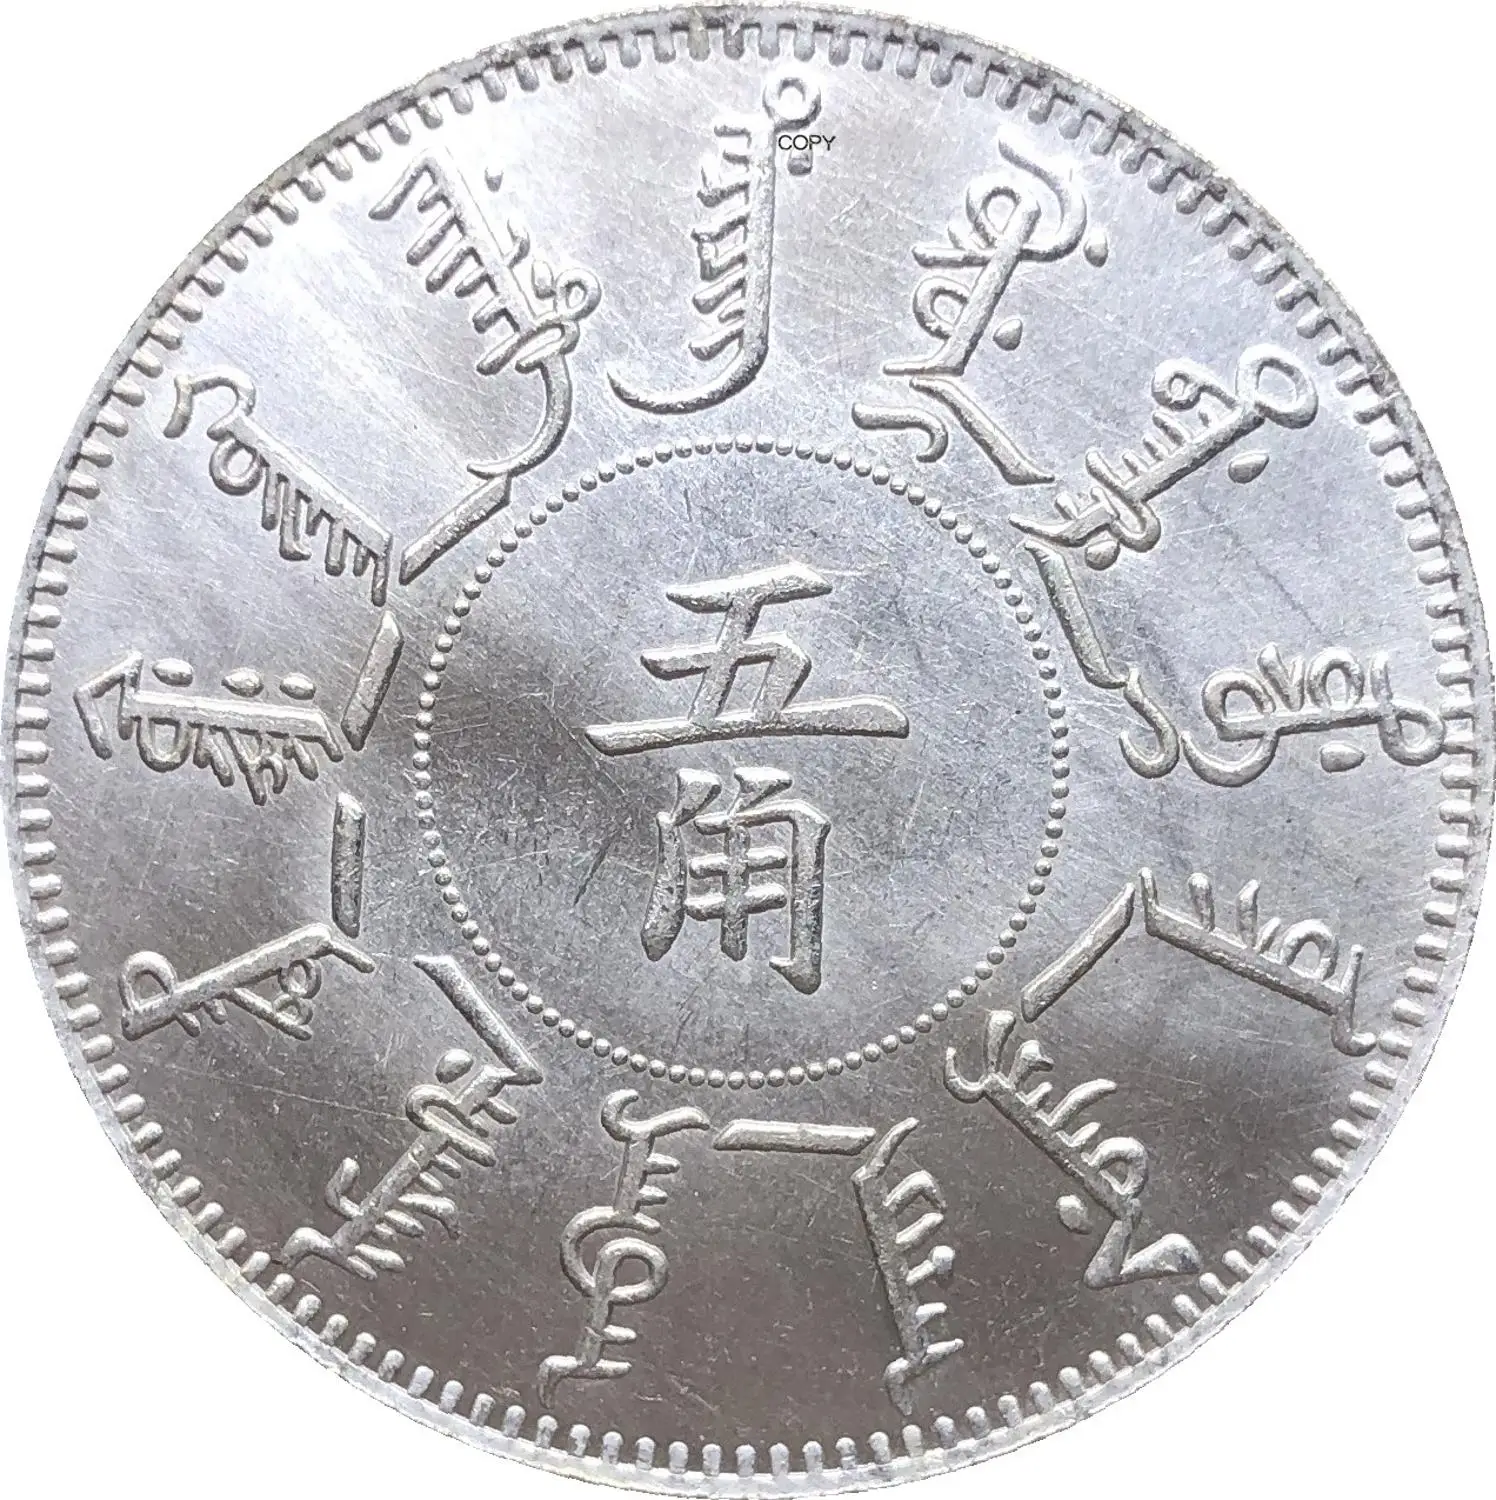 

Китайская монета Fengtien, провинция 1899, Kuang Hsu, 50 центов, половина доллара, купроникель, посеребренные копировальные монеты